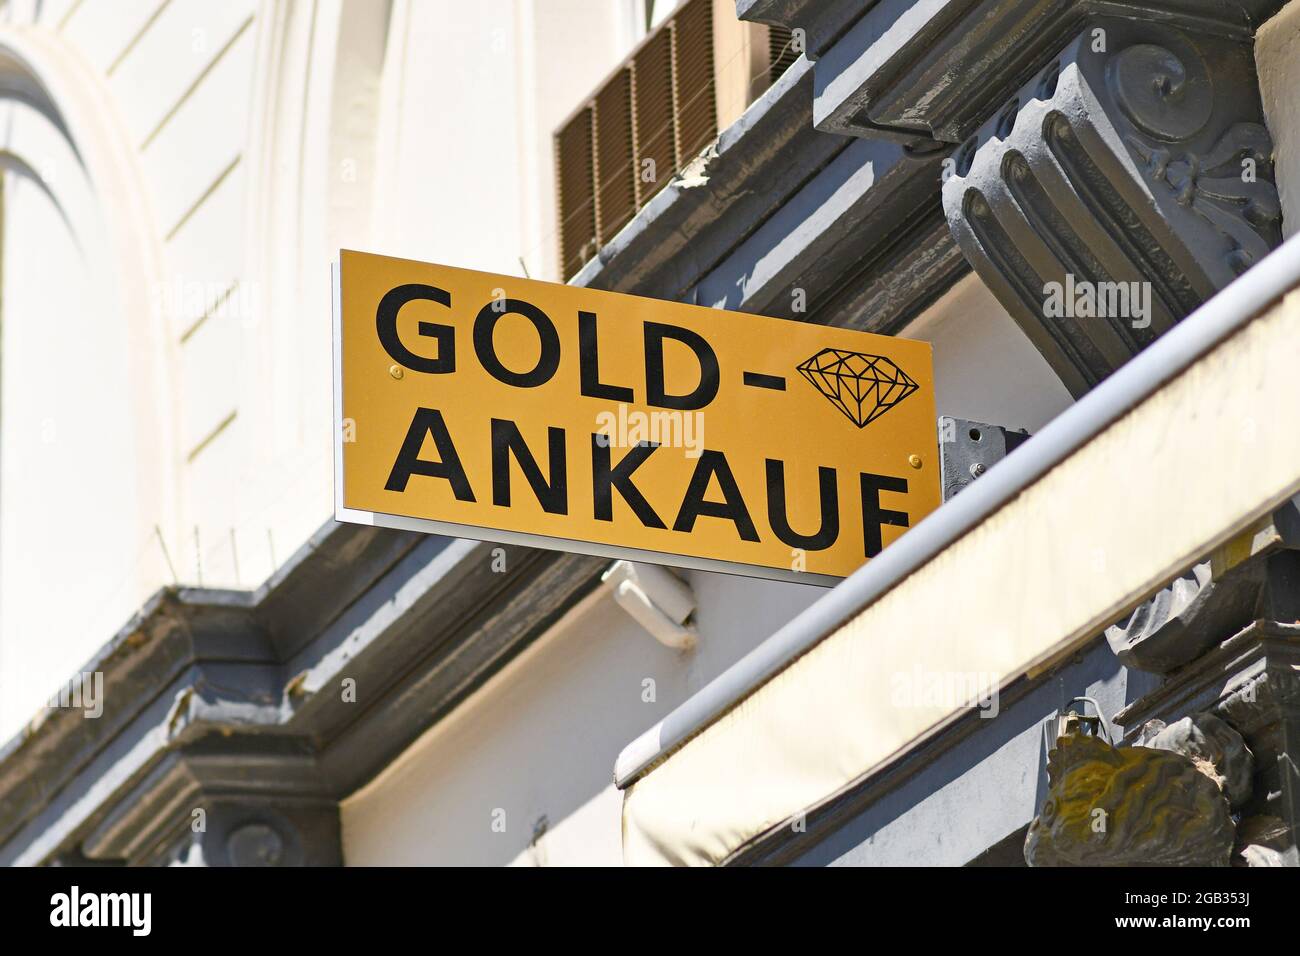 Baden-Baden, Allemagne - juillet 2021: Panneau de magasin disant "achat d'or" en allemand. Type de magasin commun achetant des pièces d'or et des articles d'or comme des bijoux Banque D'Images